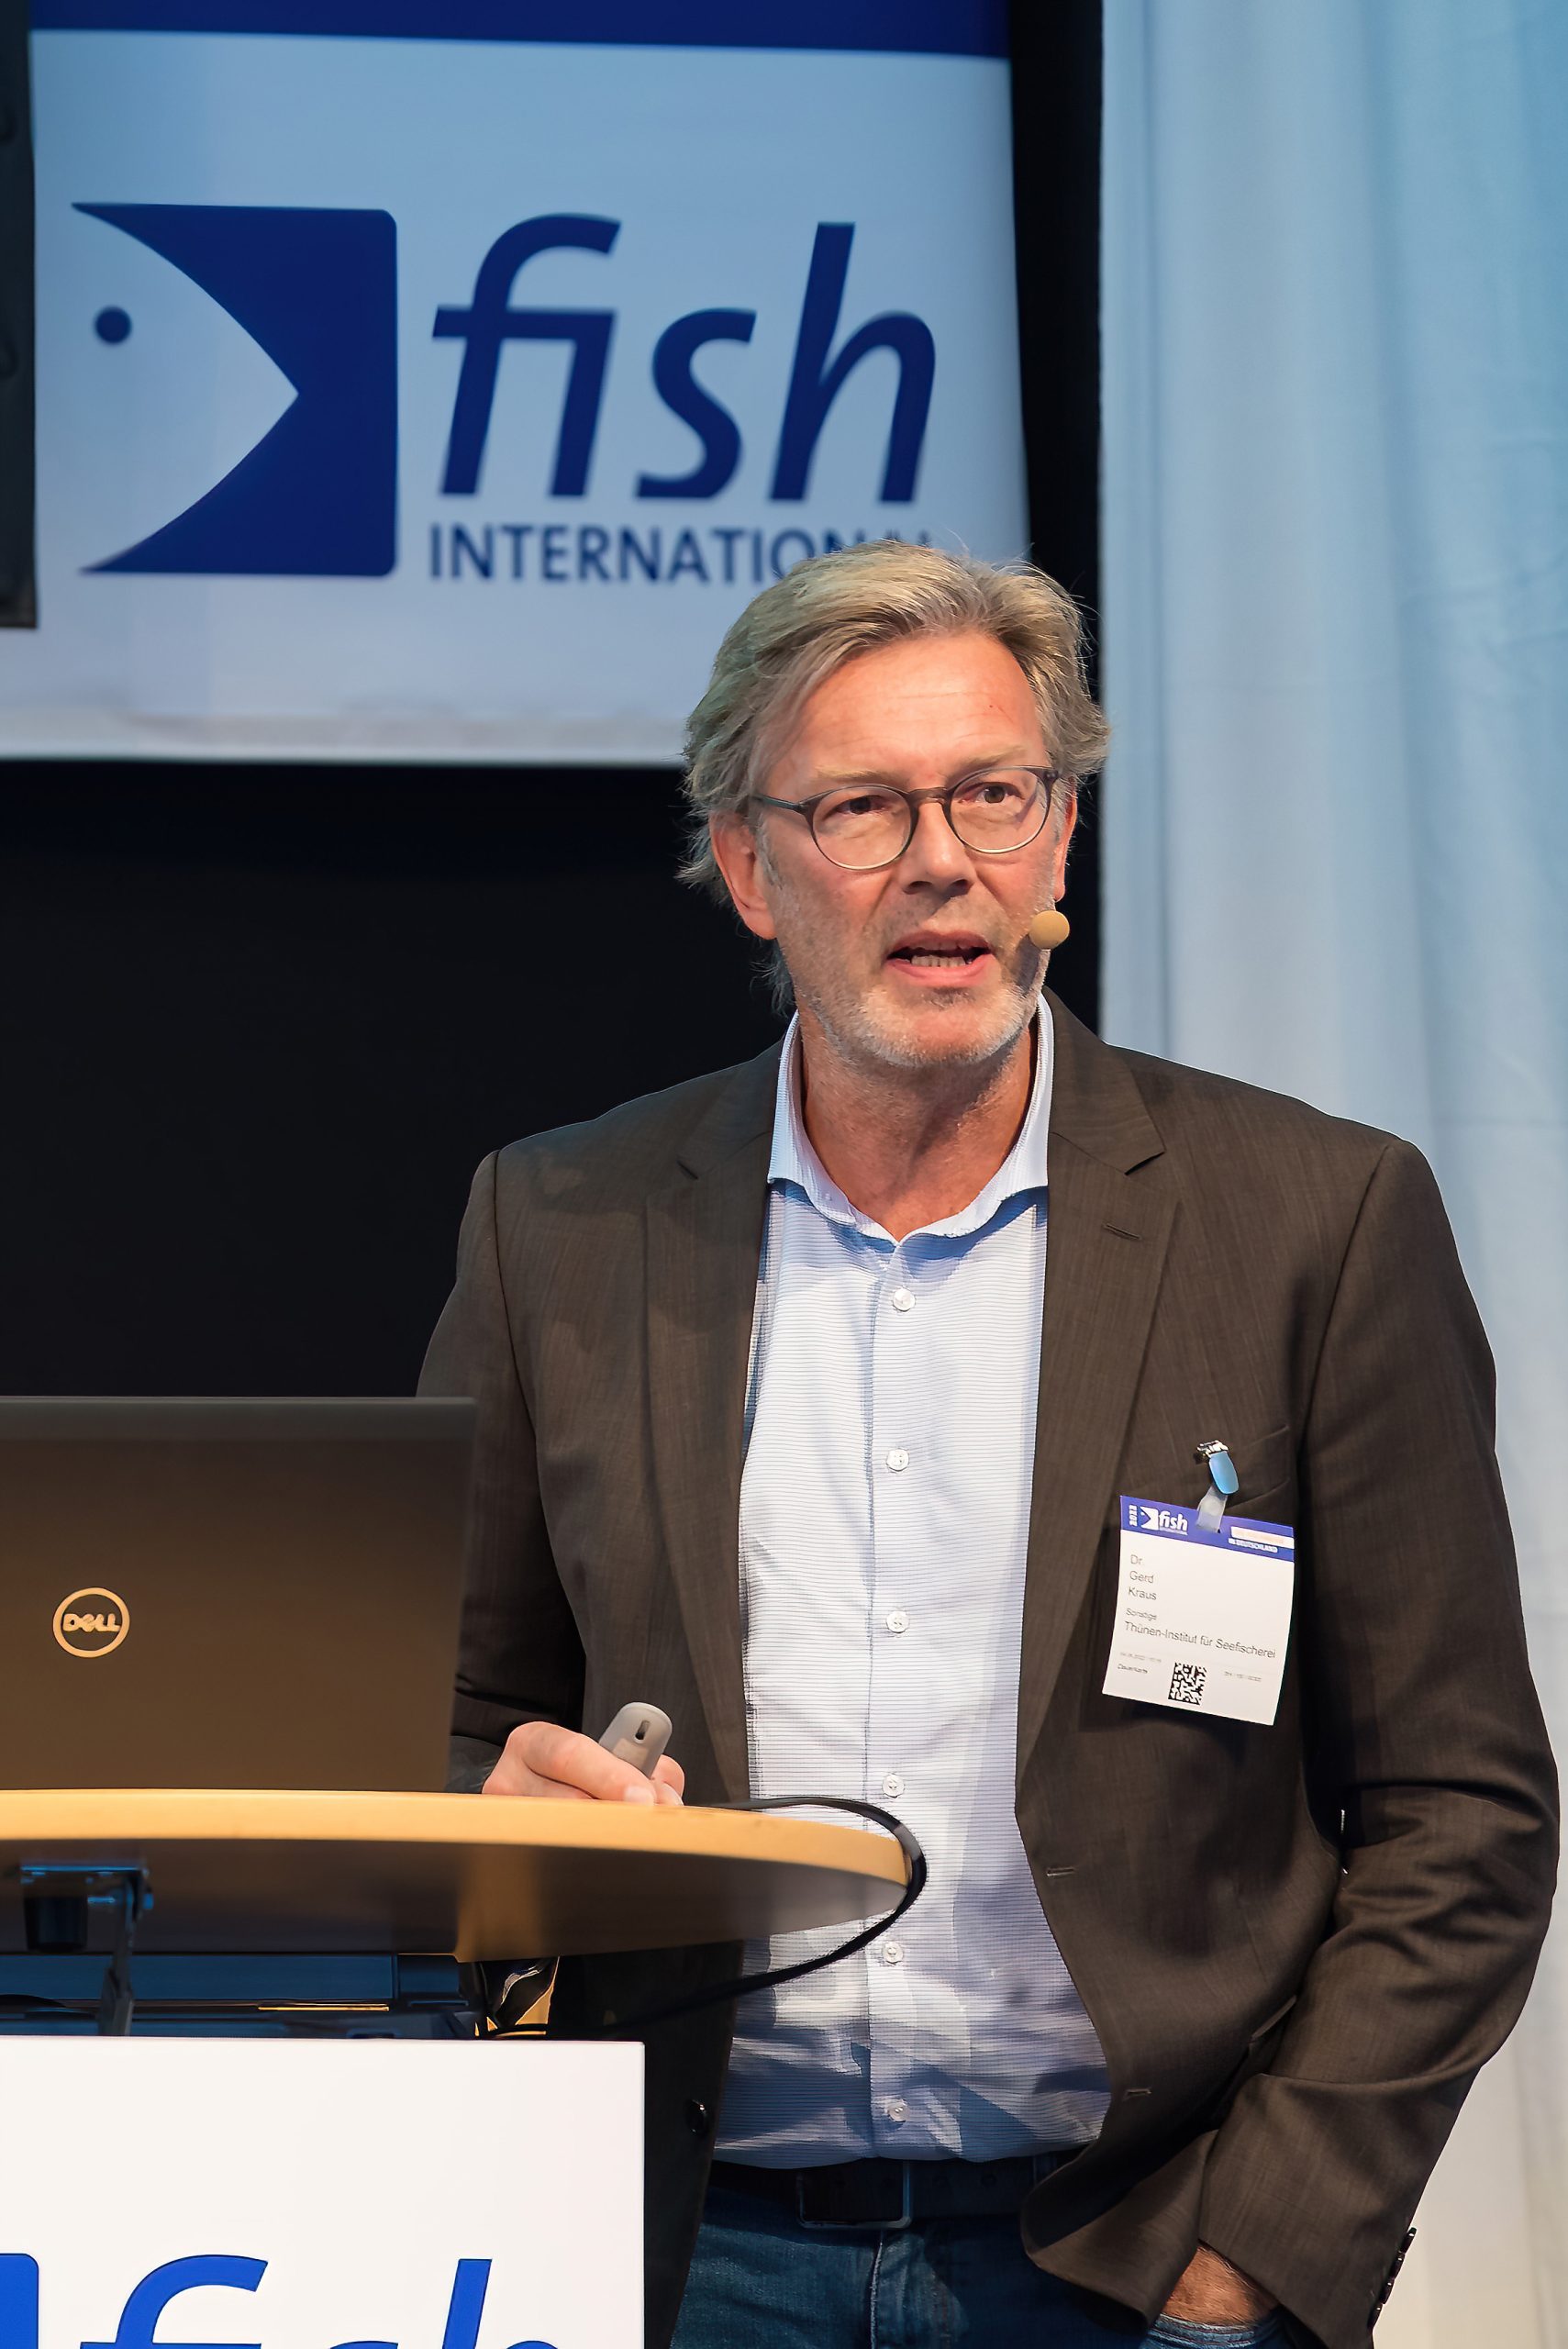 Dr. Gerd Kraus, Leiter des Thünen-Institutes für Seefischerei, auf der Auftaktveranstaltung der fish international. (c) M3B GmbH/Oliver Saul